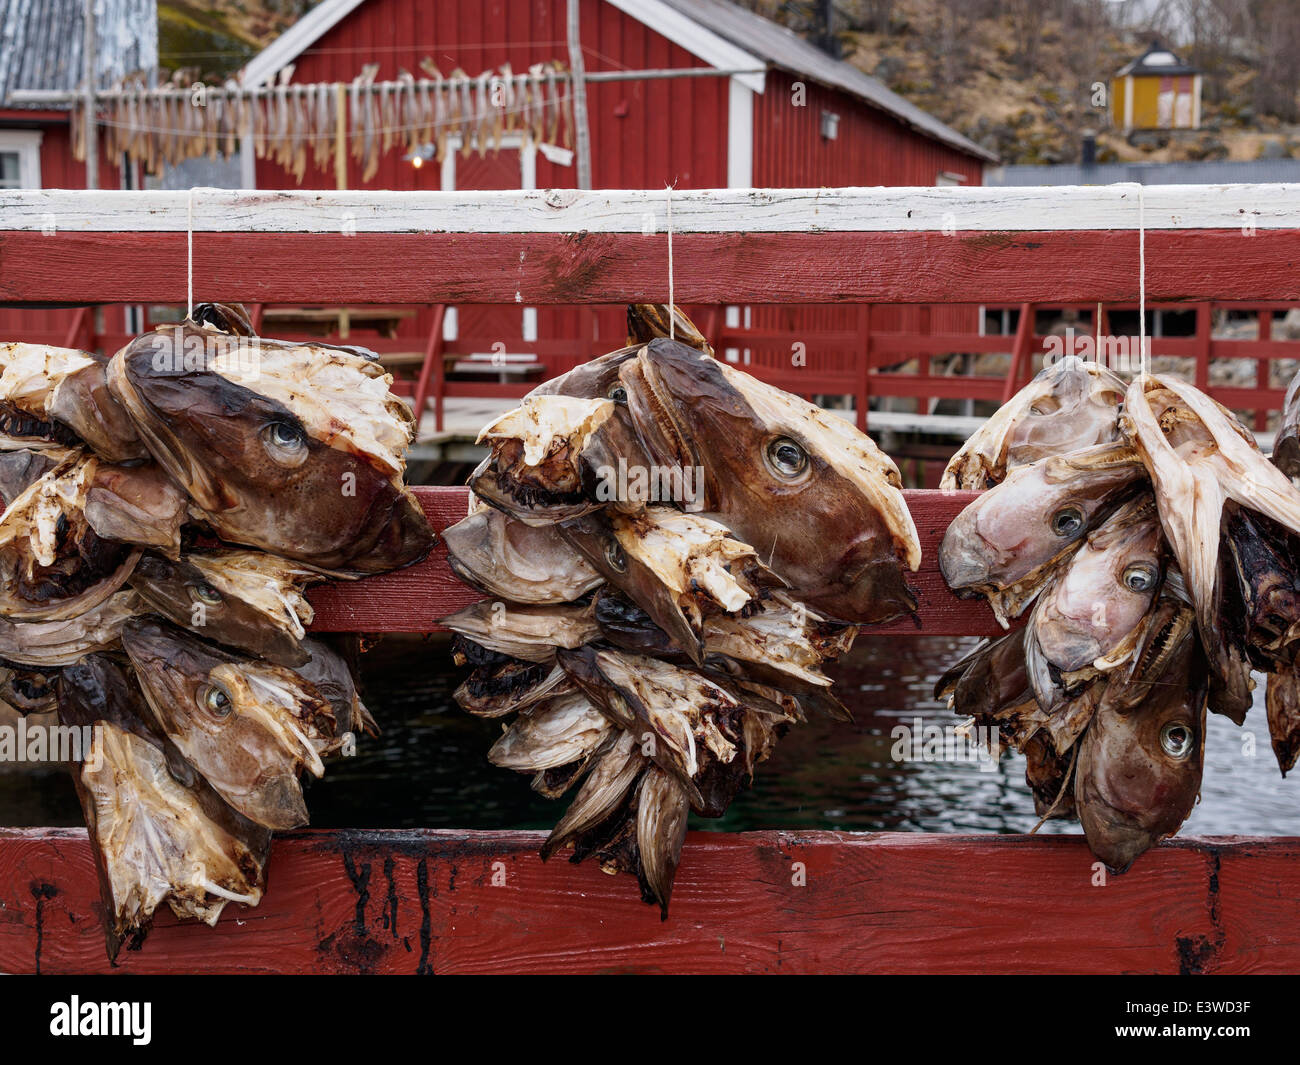 Stoccafisso (cod) le teste vengono appesi per asciugare in Nusfjord sulle isole Lofoten in Norvegia. Foto Stock